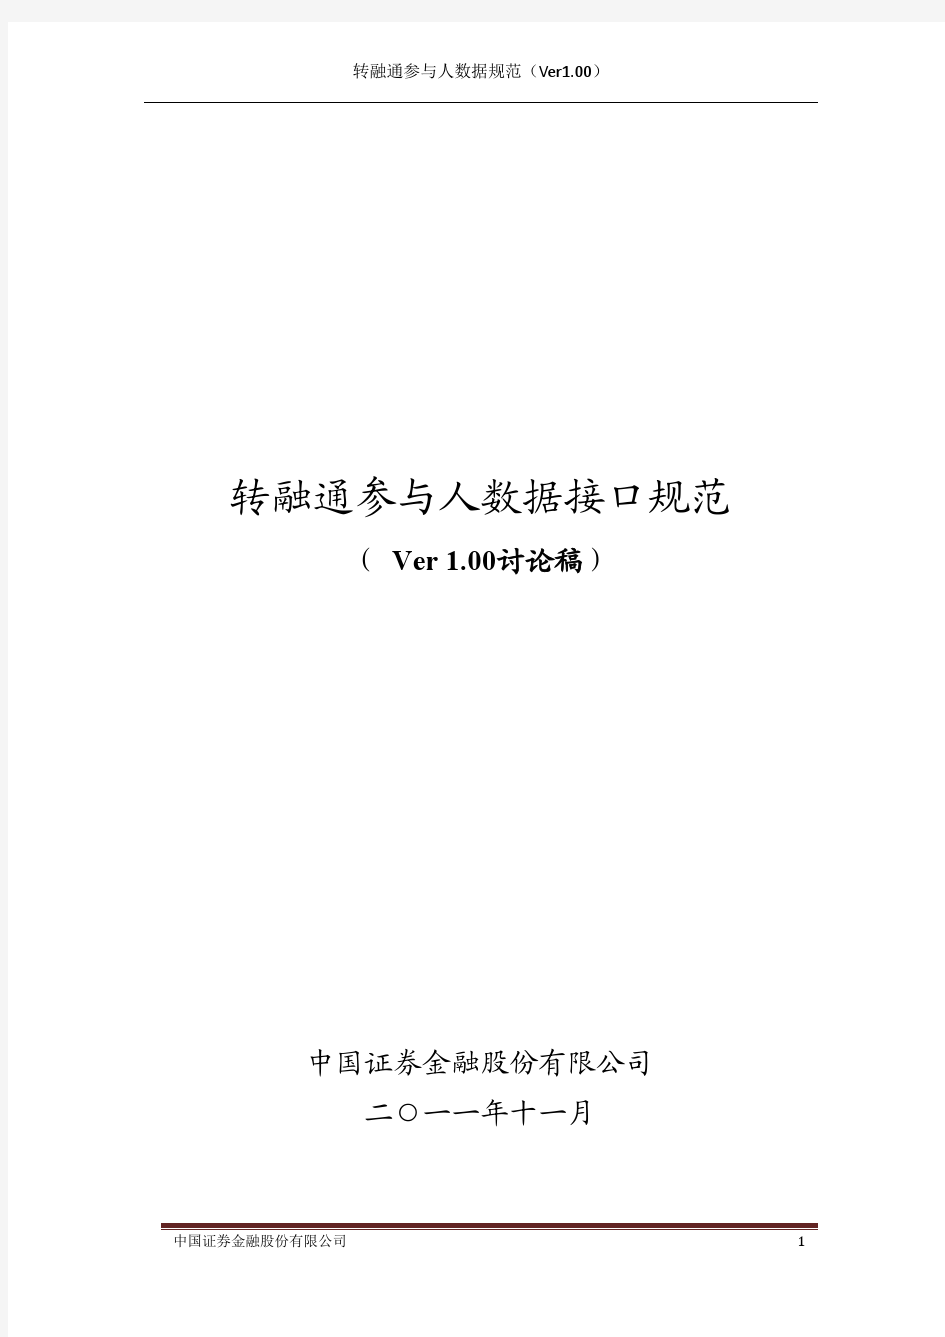 中国证券金融公司转融通参与人数据接口规范(Ver1.00)_20111207